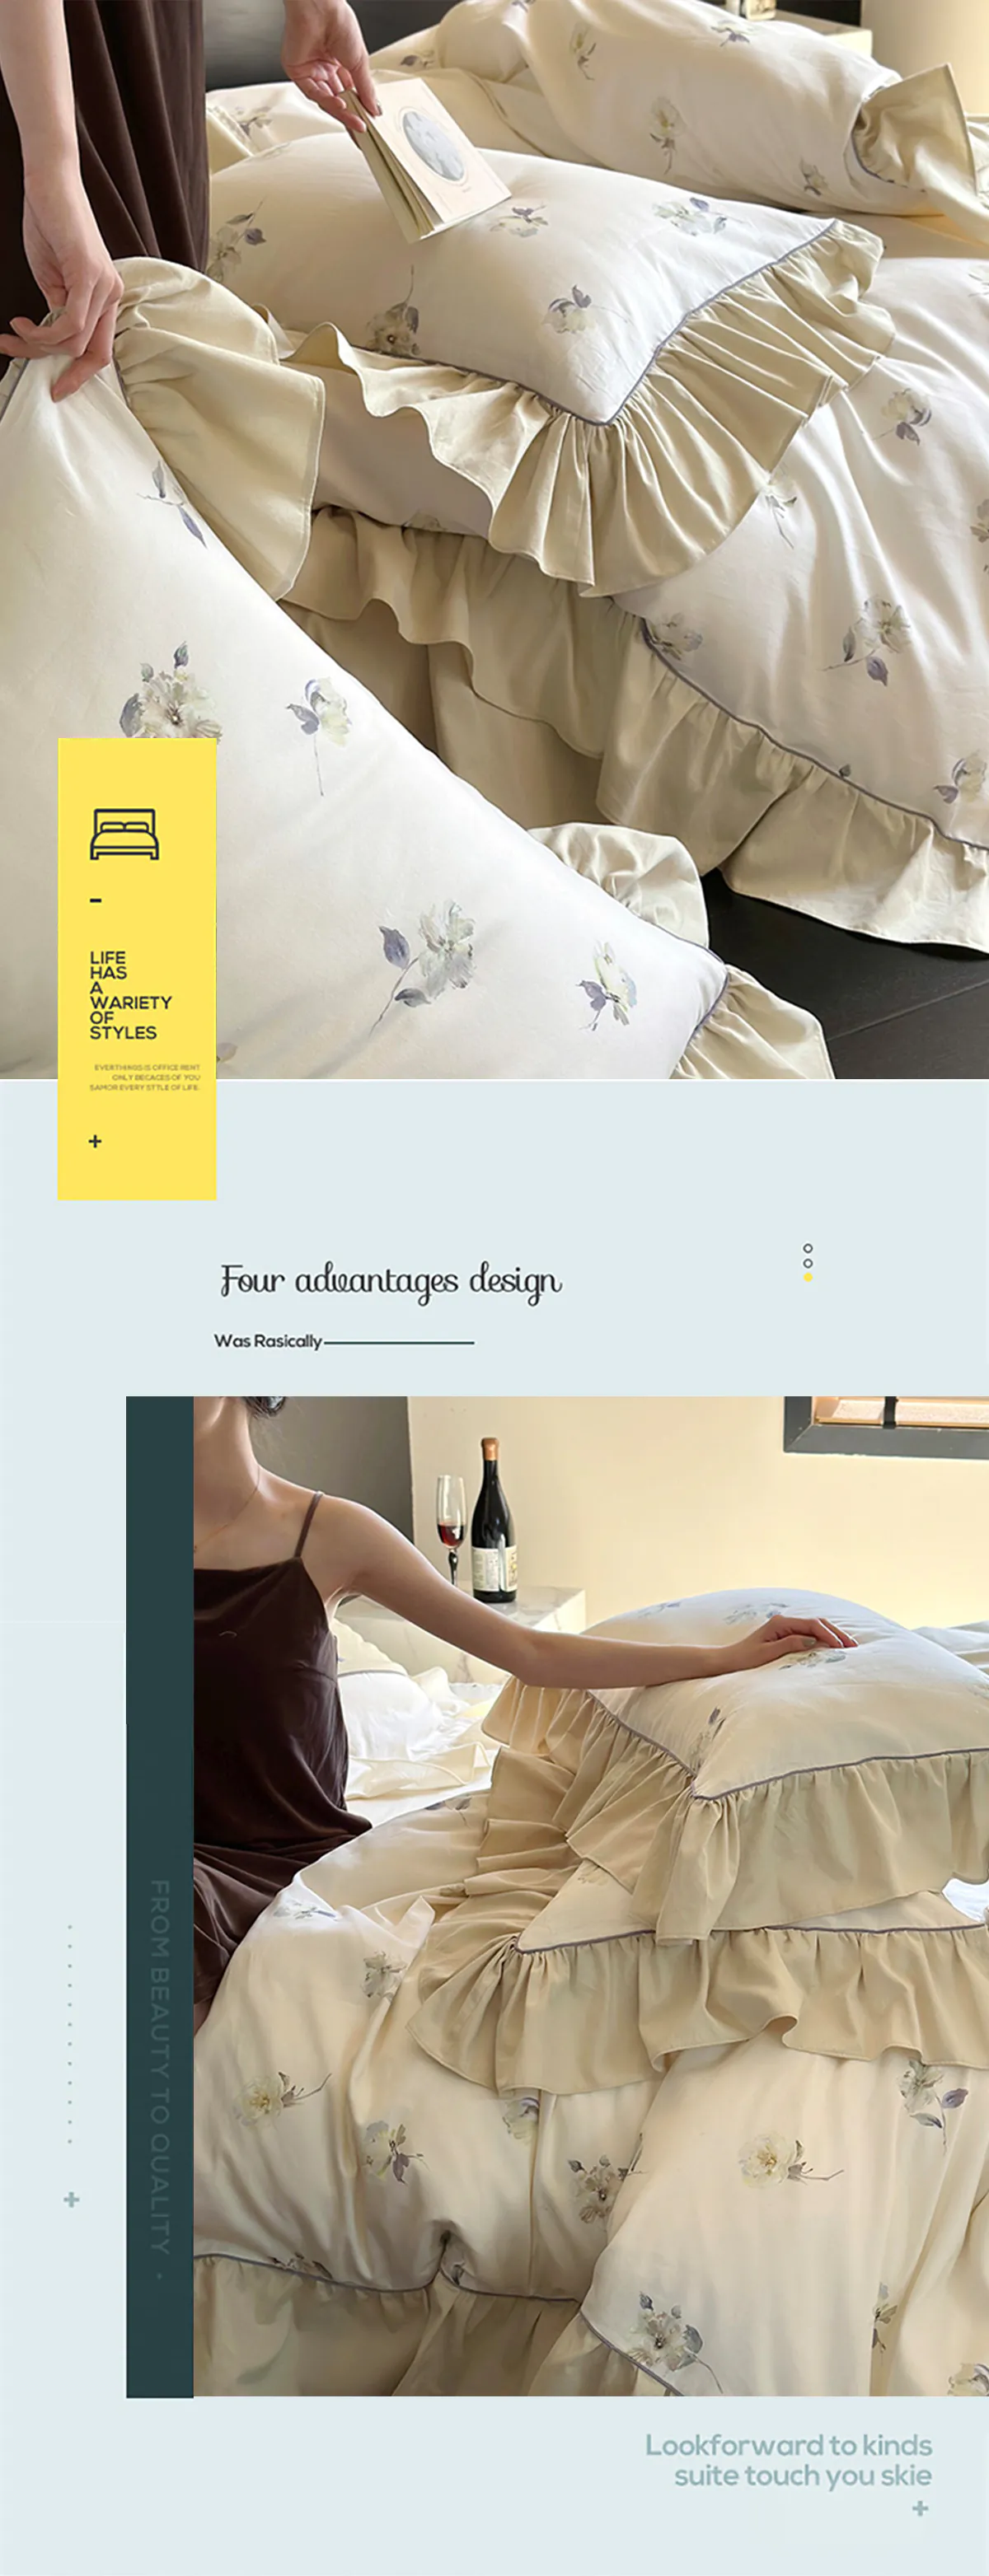 Super-Soft-Floral-Print-Cotton-Matte-Bedding-Set-Queen-King-Size17